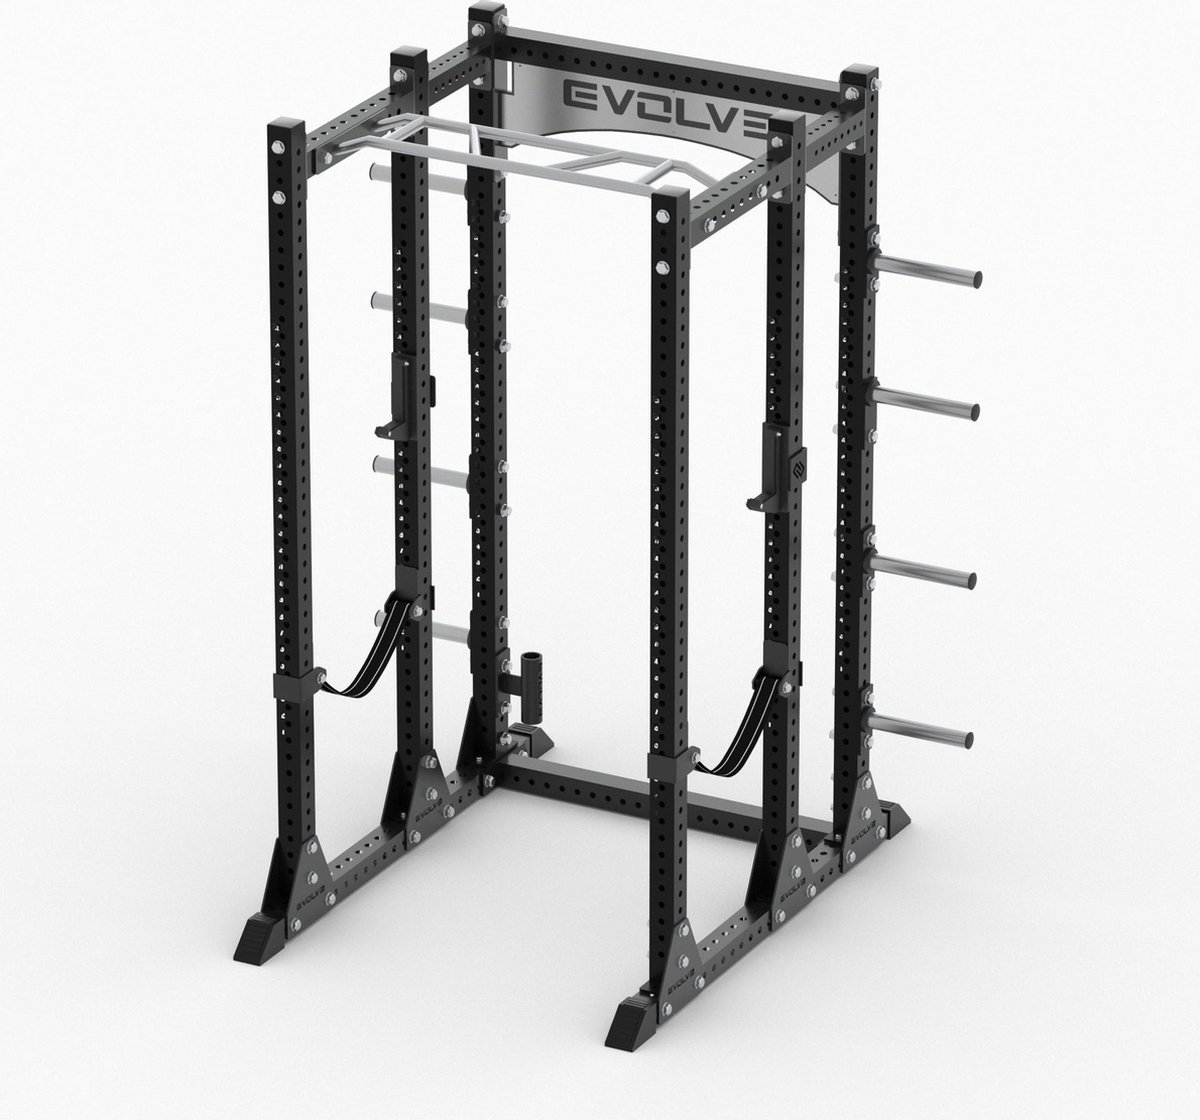 Krachtstation Evolve Fitness Full Power Rack FR-200 Cage - Voor Zwaar Commercieel gebruik of Professionele Home Gym - Duurzaam Frame - Volledig Verstelbaar - Multi Grip Pull-Up Bar - Veiligheidsbanden - 1000KG Belastbaar - Goede Garantievoorwaarden